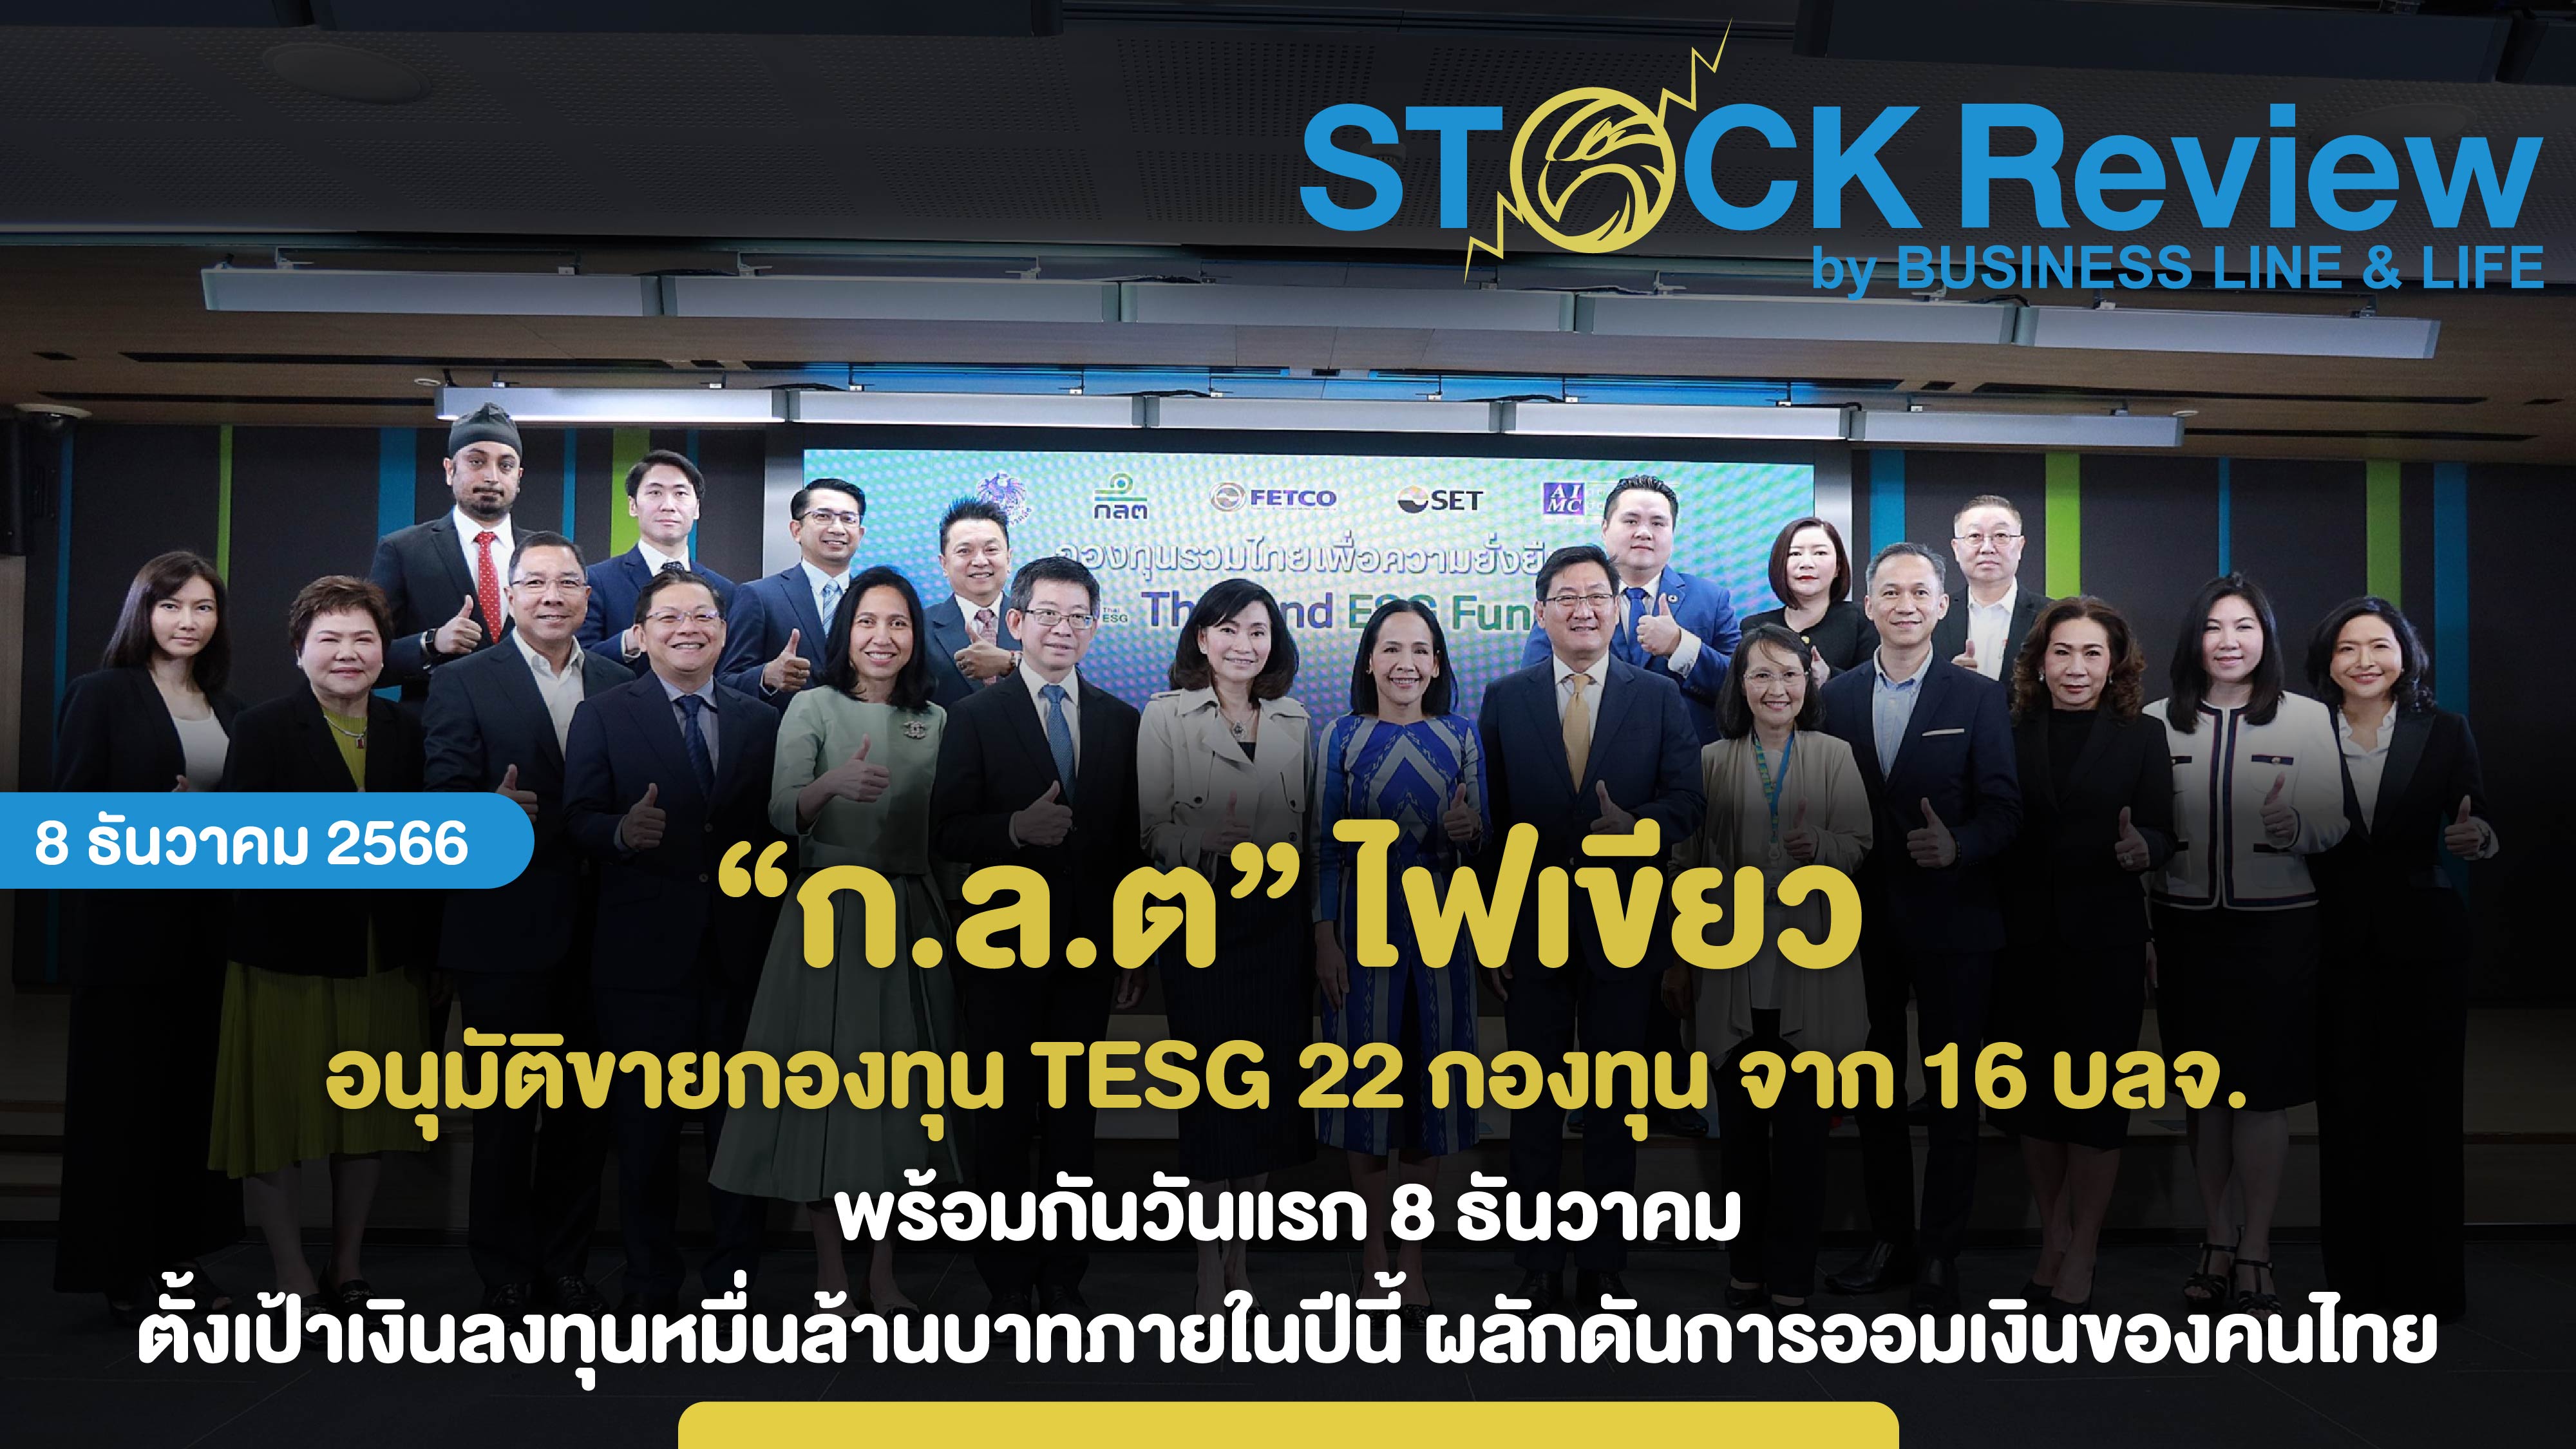 ก.ล.ต. ไฟเขียว อนุมัติขายกองทุน TESG 22 กองทุน จาก 16 บลจ. พร้อมกัน 8 ธันวาคมวันแรก ตั้งเป้าเงินลงทุนหมื่นล้านบาทภายในปีนี้ ผลักดันการออมเงินของคนไทย